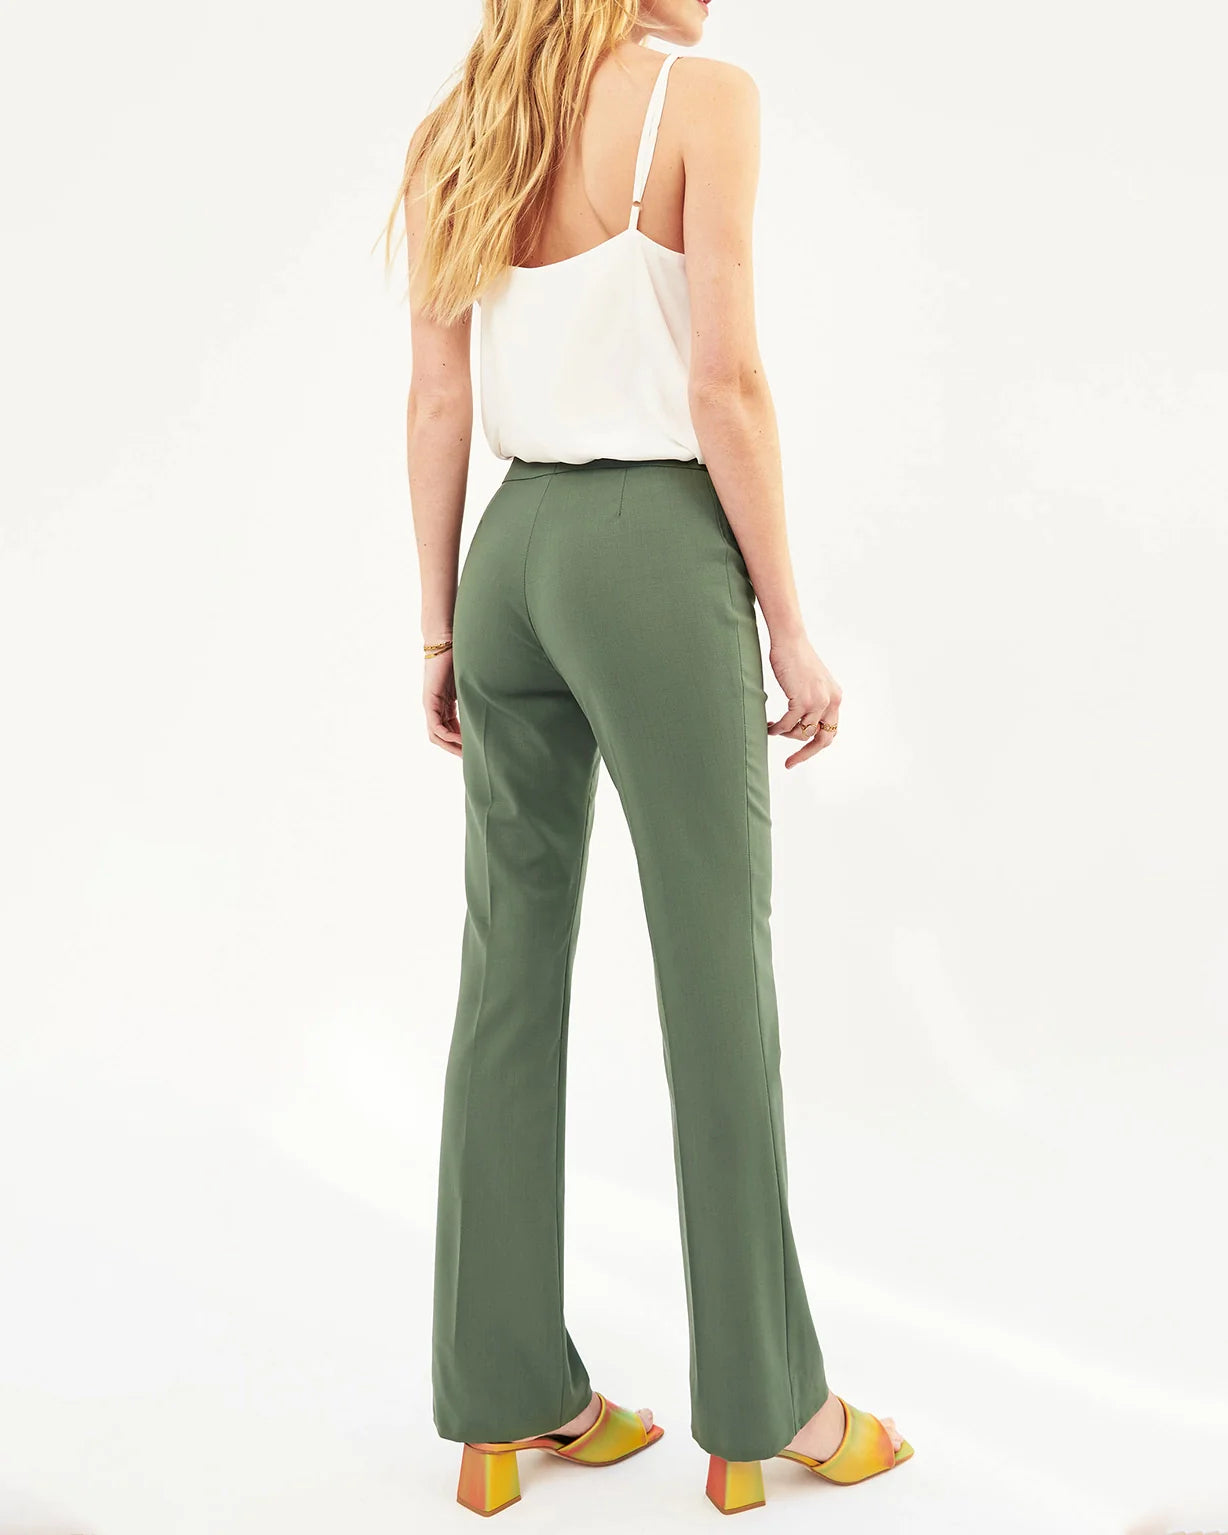 pantalon-flair-vert-tilleul-fité-éthique-workwear-working-girl-tailleur-paris-17H10-